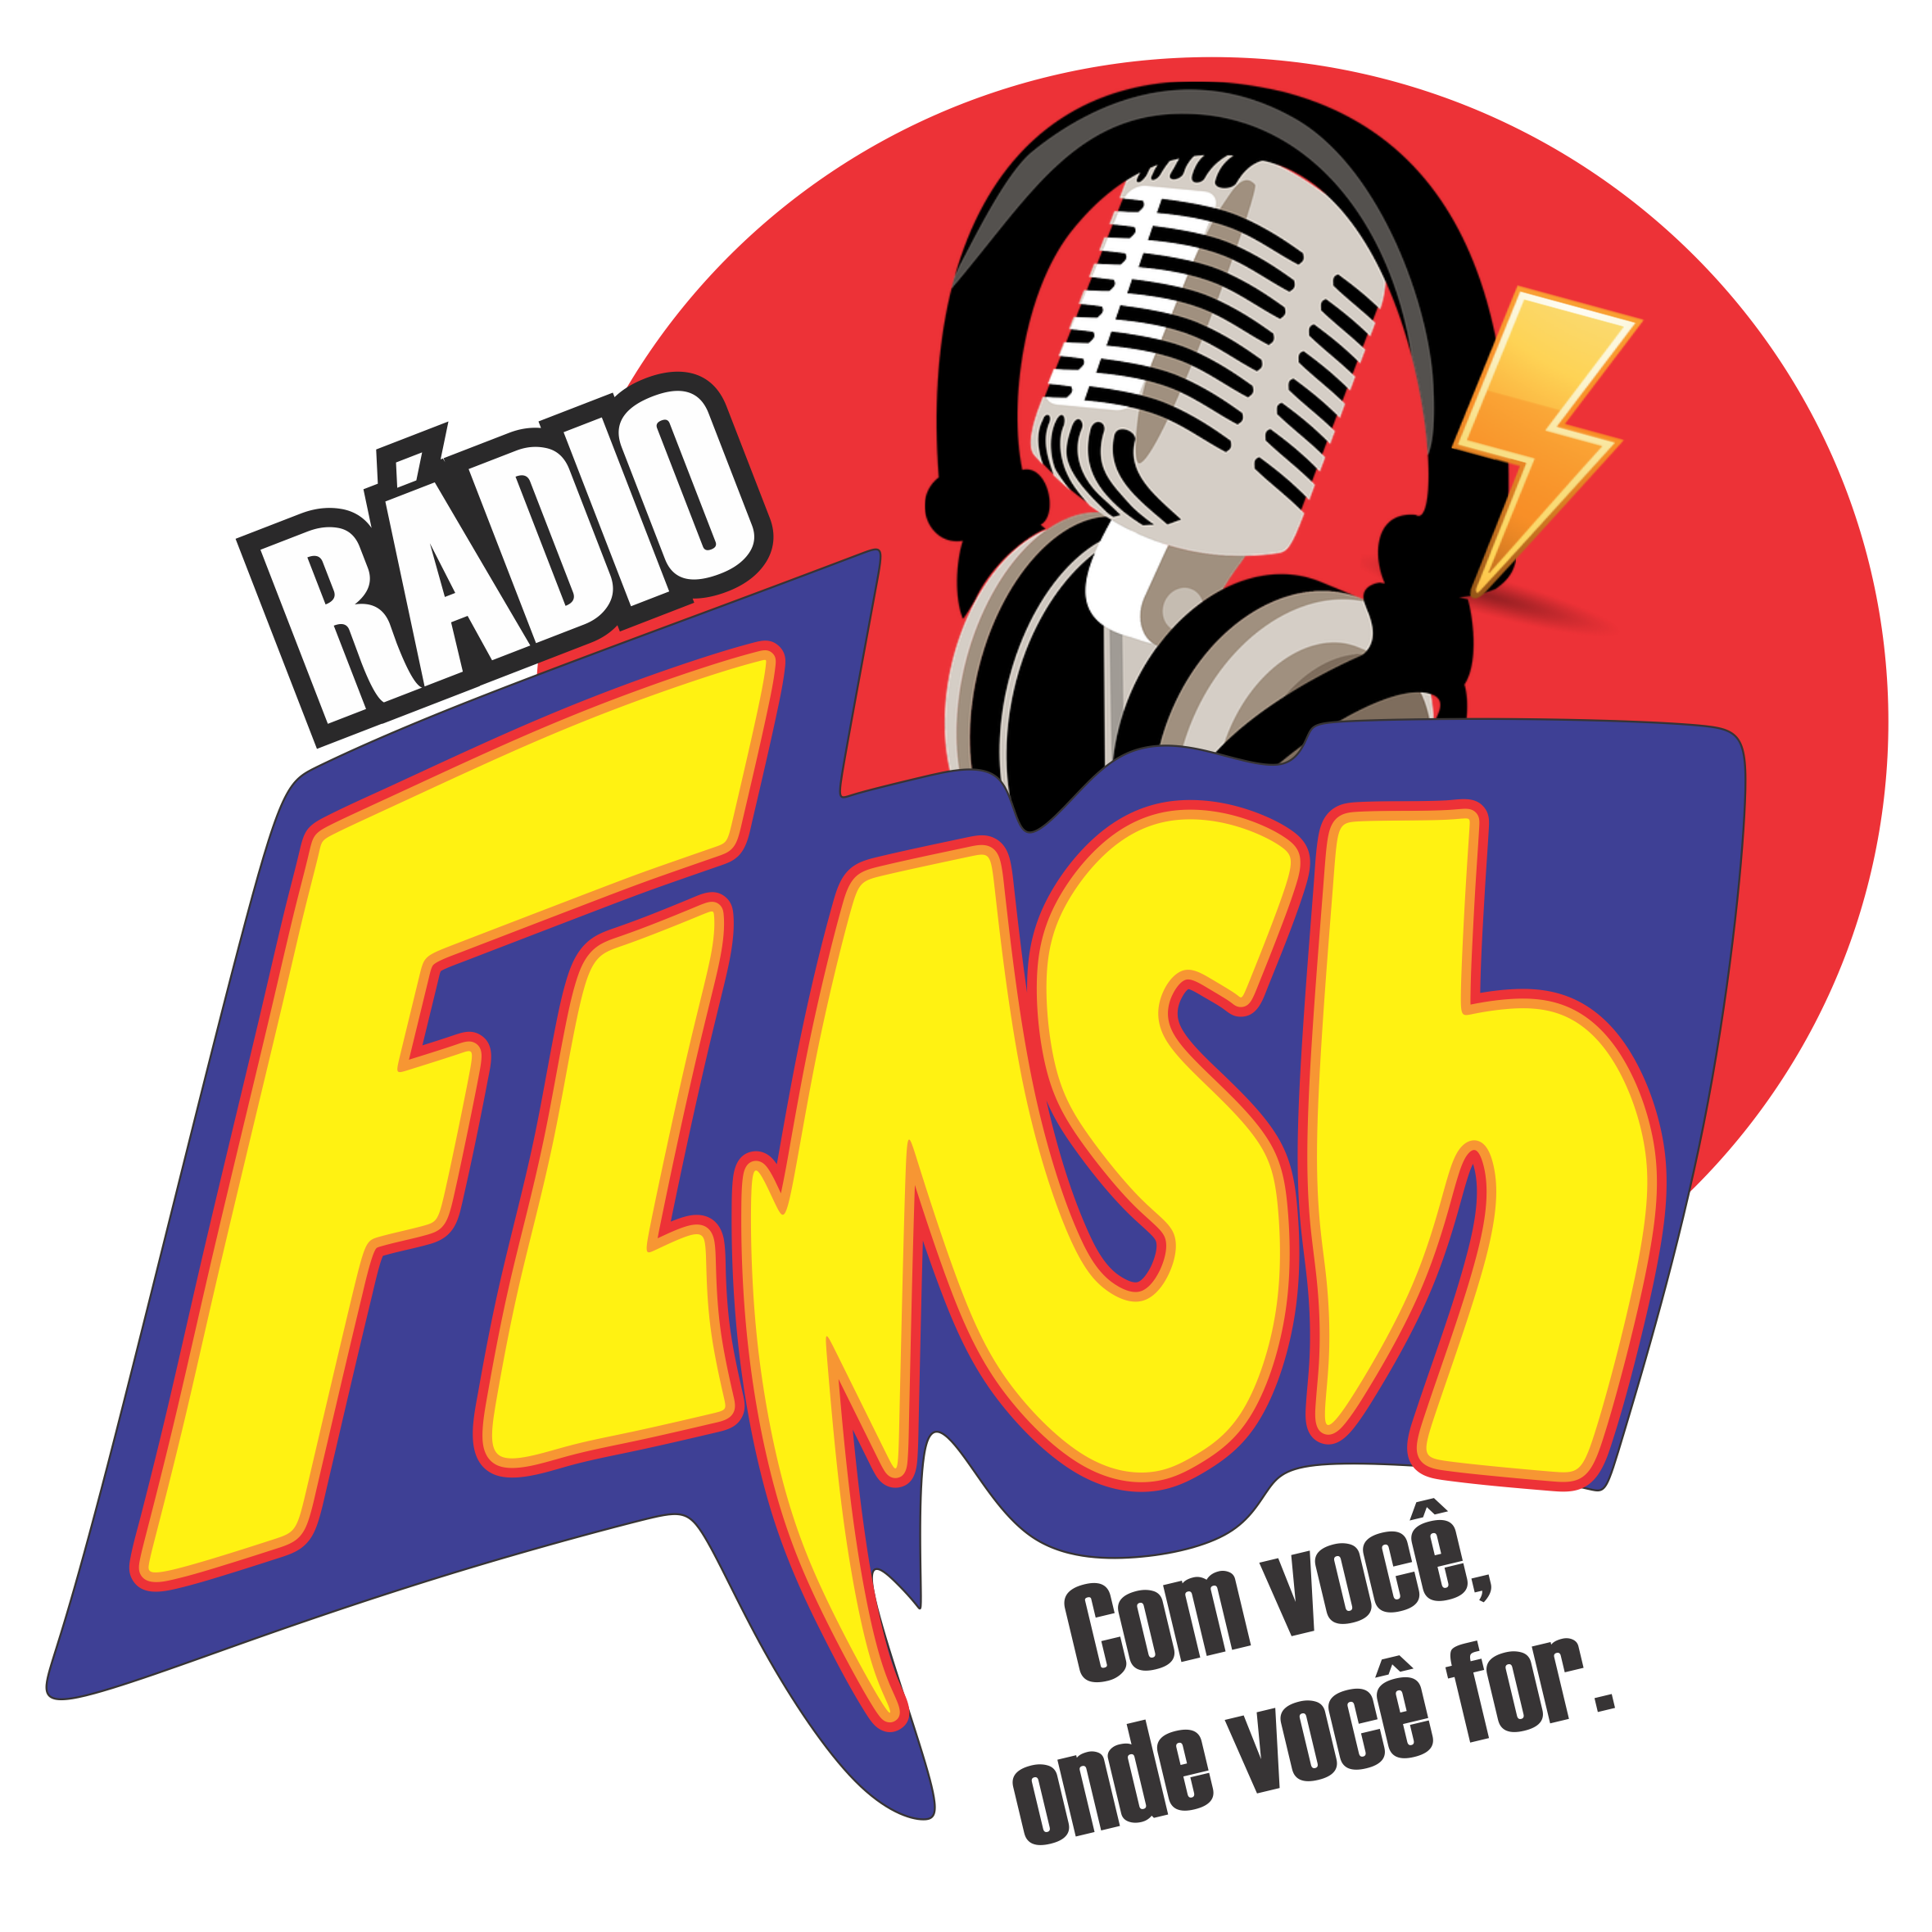 Web Rádio Flash